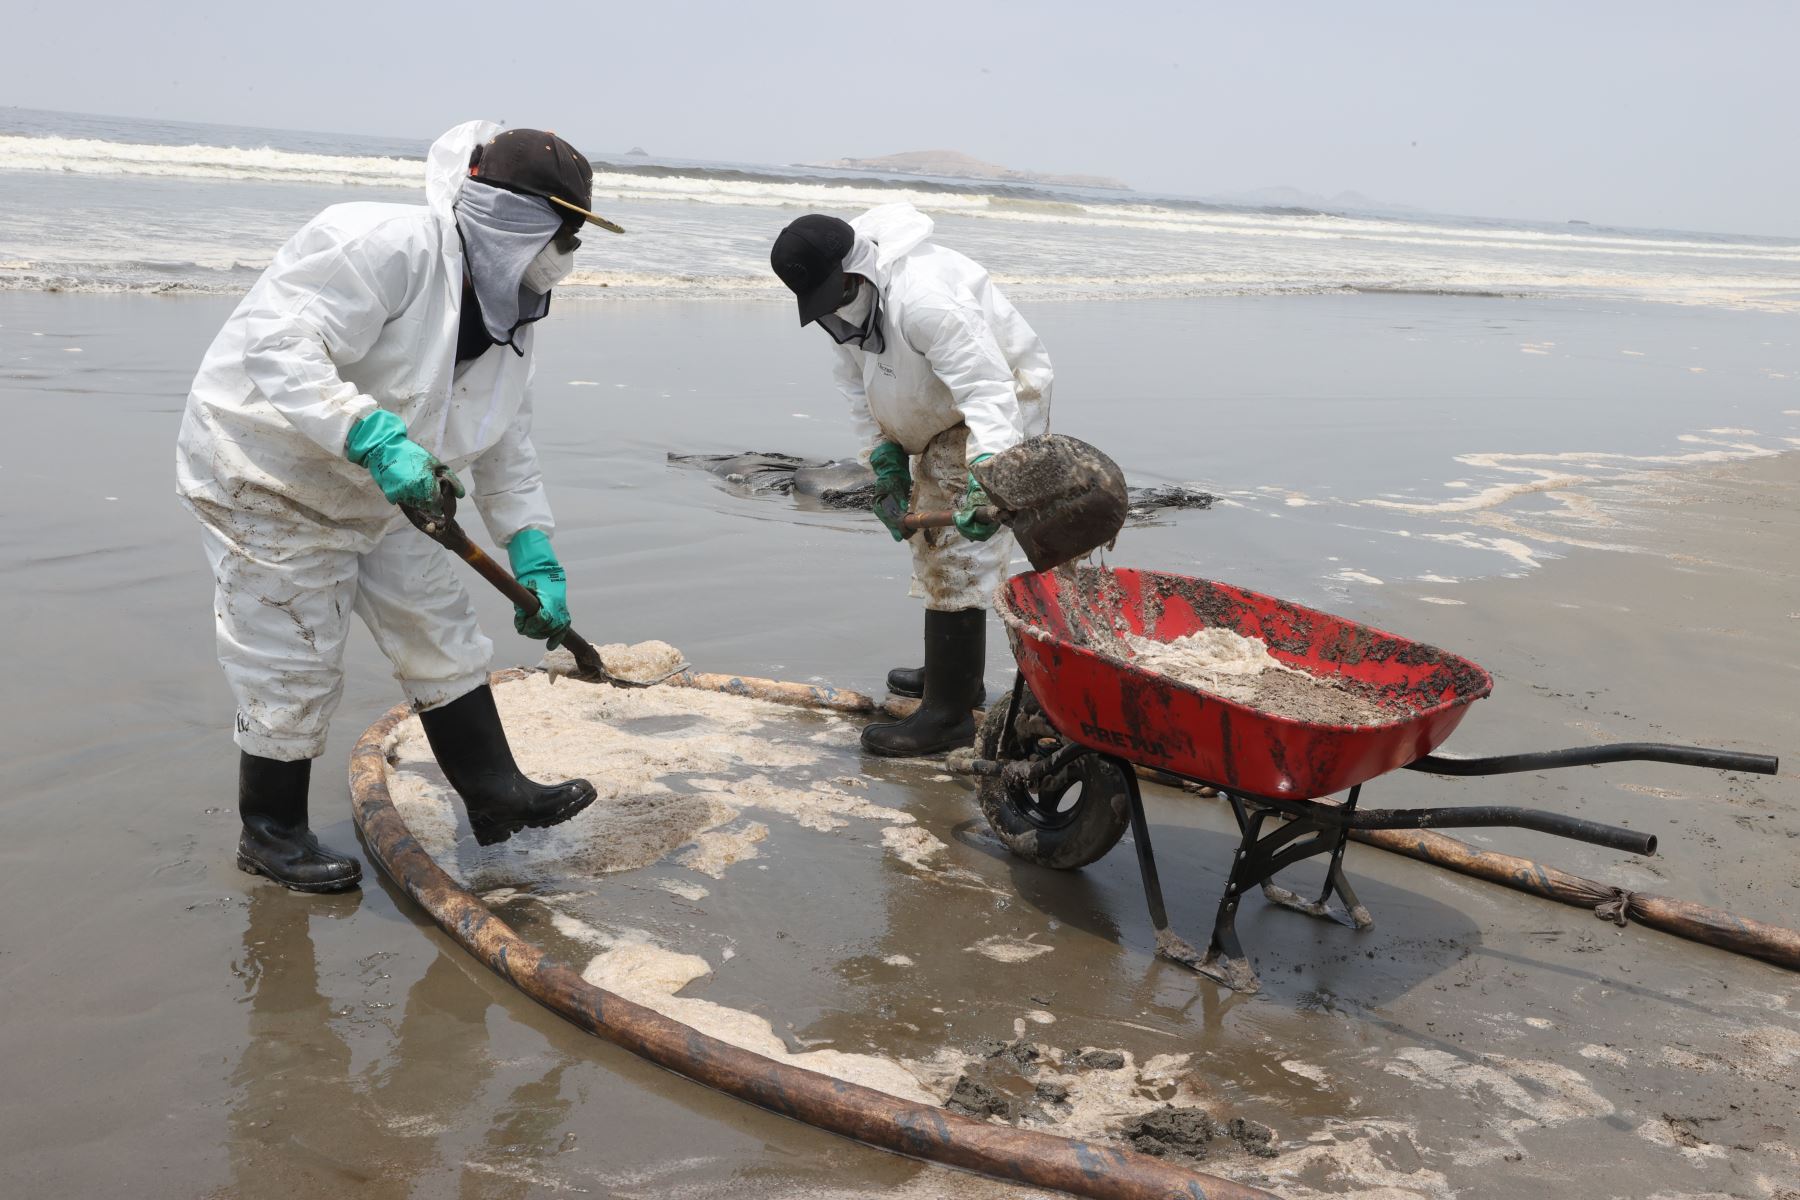 Consumidores afectados por derrame de petróleo pueden presentar sus casos  al Indecopi | Noticias | Agencia Peruana de Noticias Andina